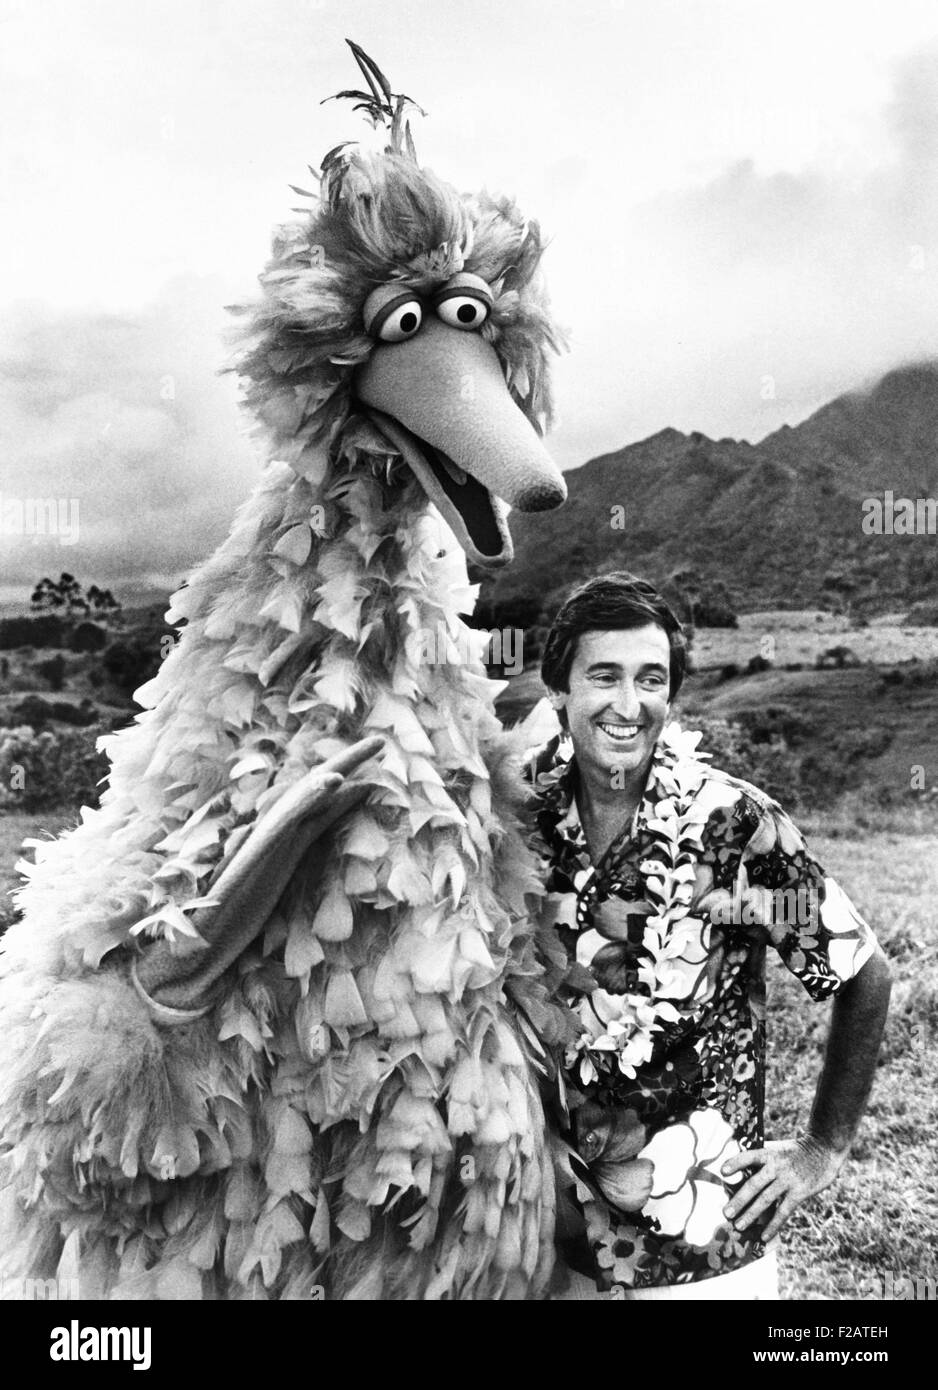 Grosso uccello (Carroll Spinney) e Bob McGrath di SESEME STREET sull'isola hawaiana di Kauai. Essi sono stati la nastratura una speciale location-based episodio per la stagione 1977-78. (CSU 2015 11 1679) Foto Stock